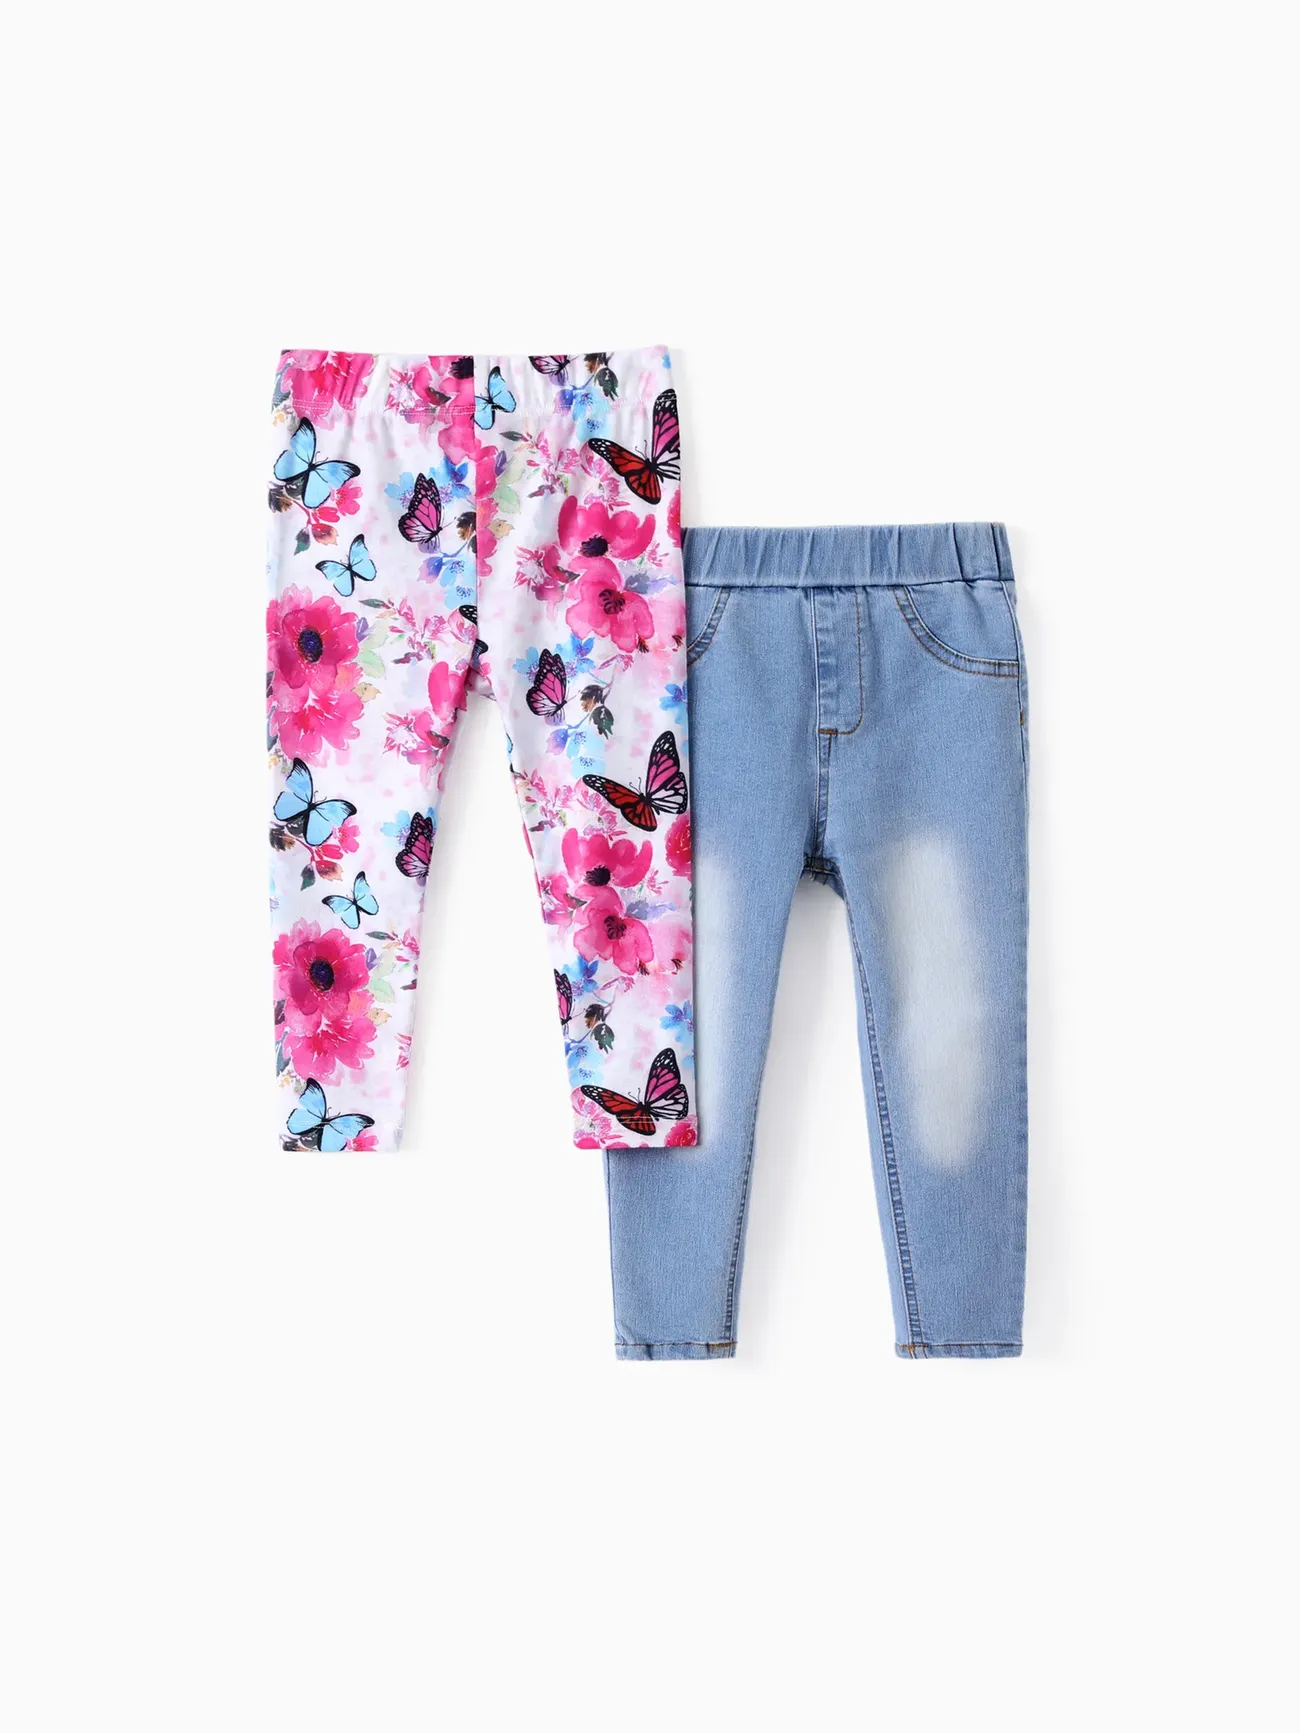 Toddler/Kid Girl 2pcs Floral Print Leggings ＆Solid Denim Jeans Set Multi-color big image 1